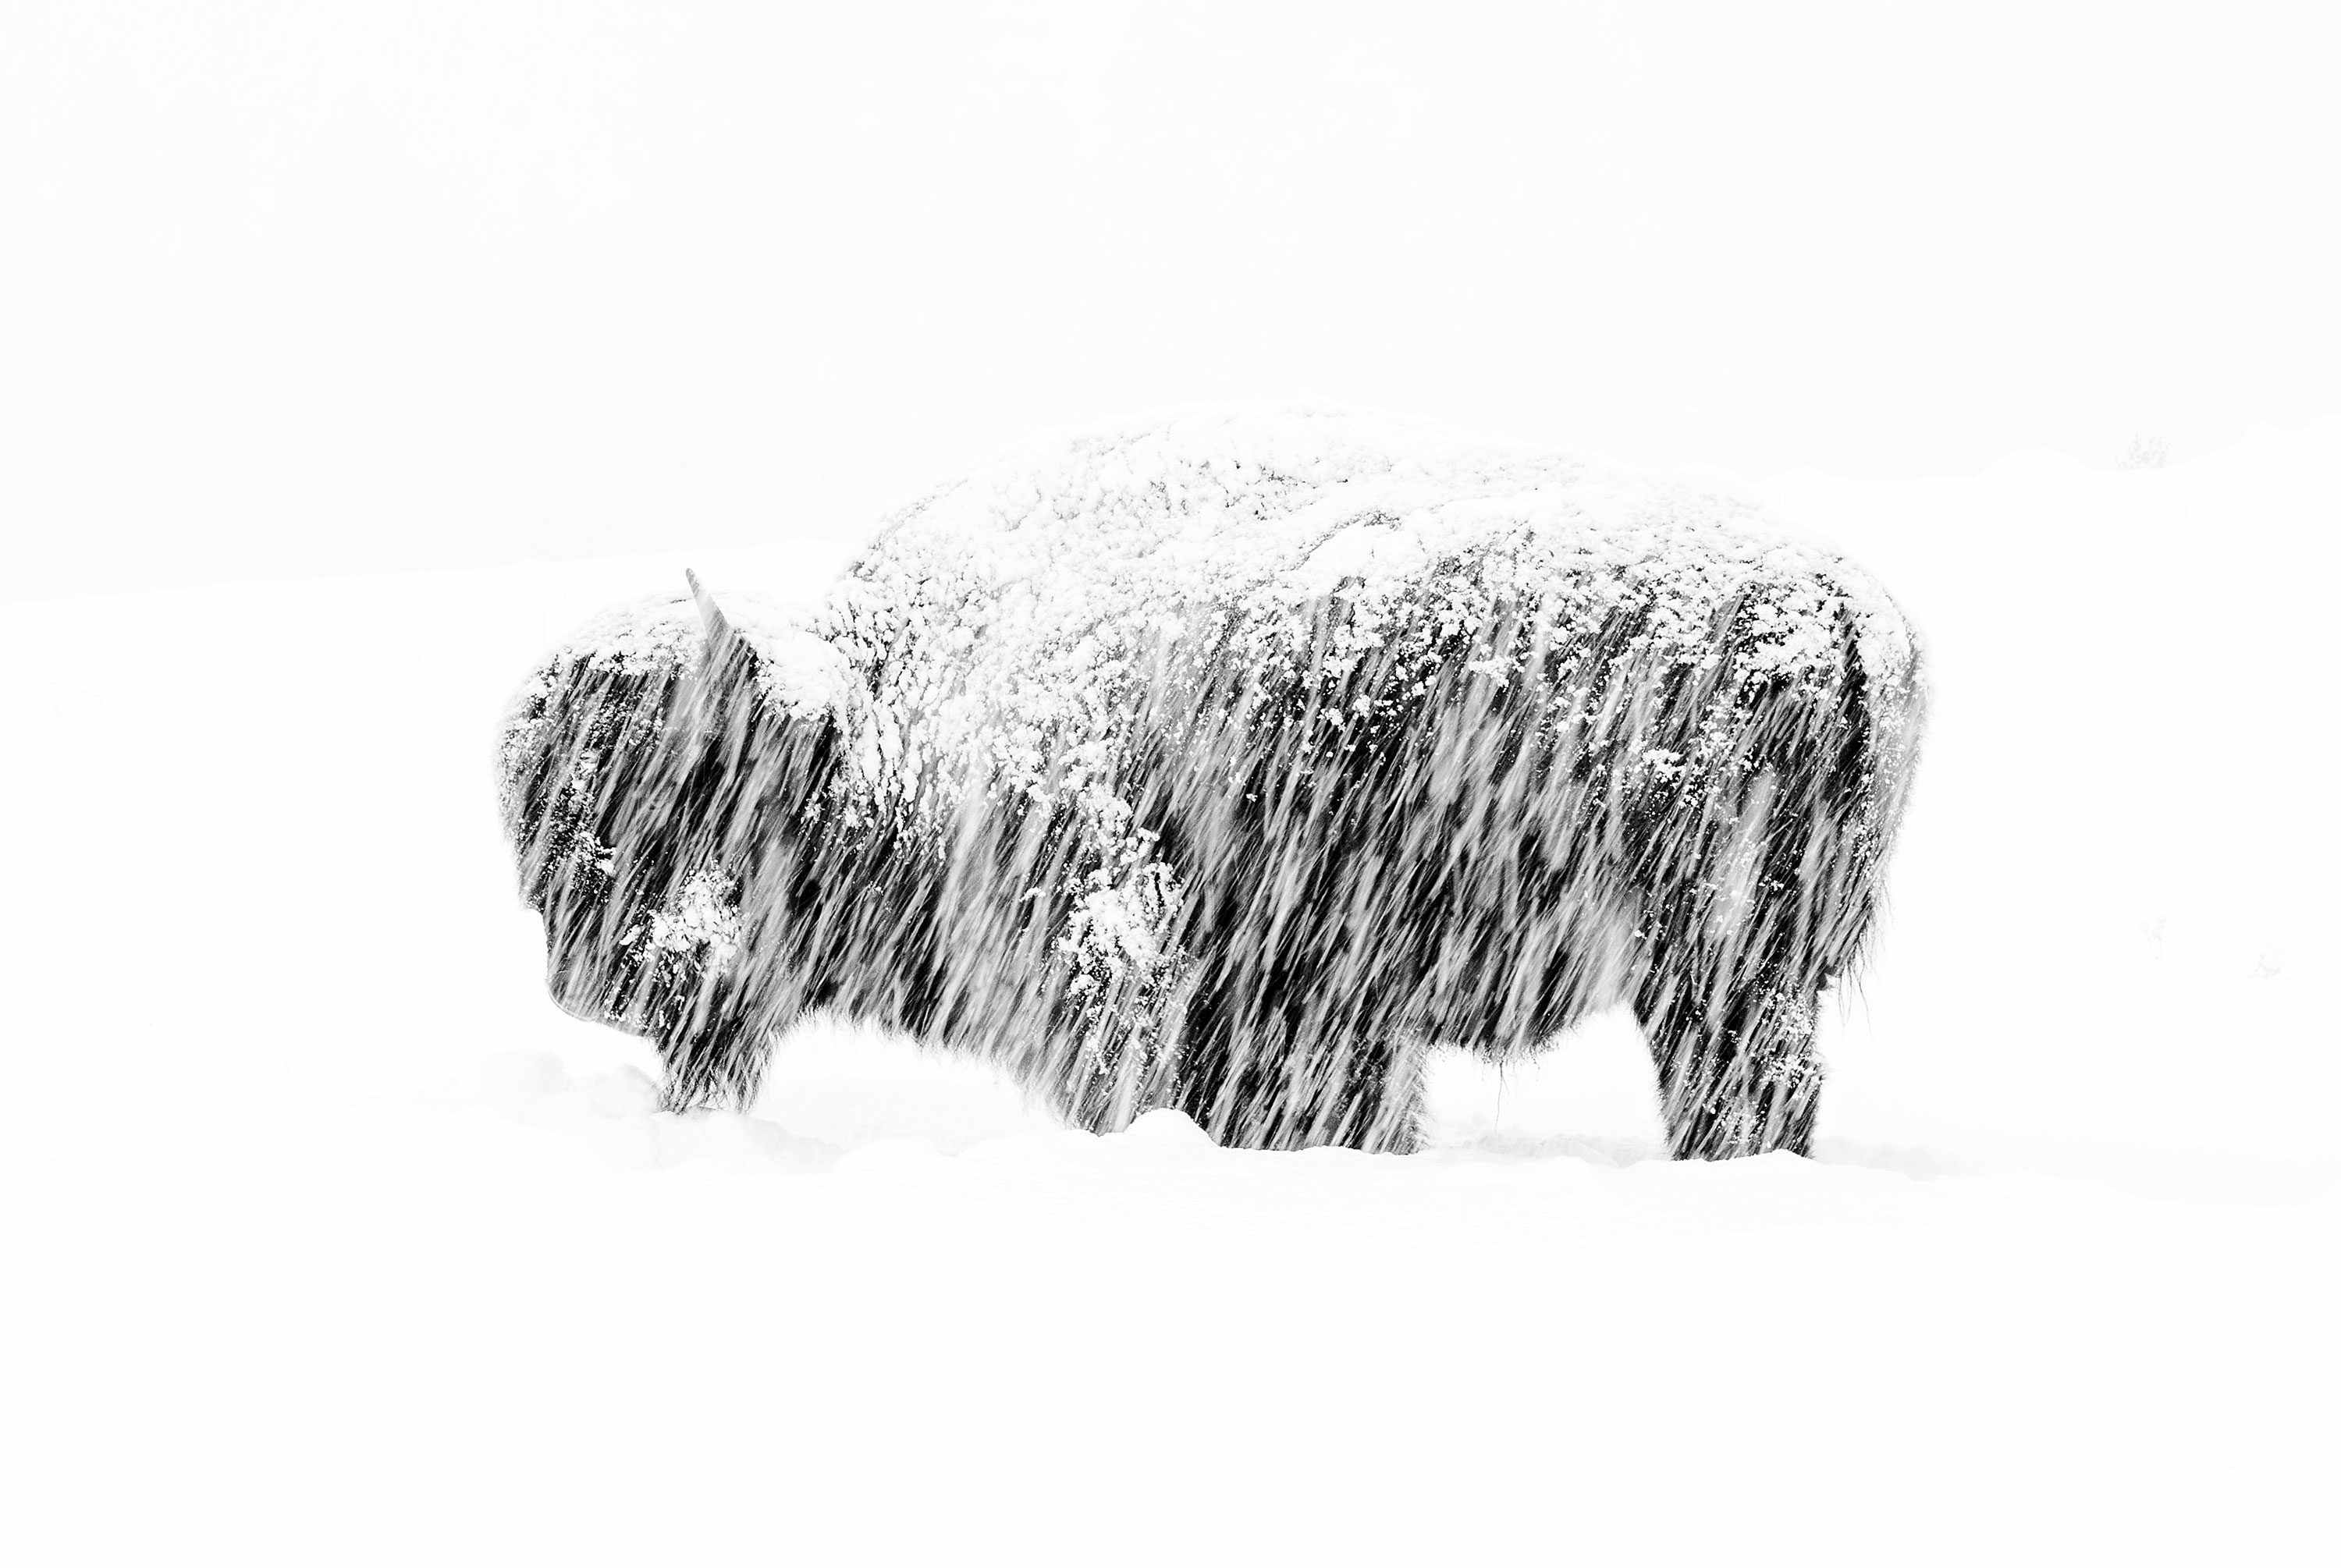 Hình ảnh một con bò rừng đơn độc trong cơn bão tuyết ở Công viên Quốc gia Yellowstone